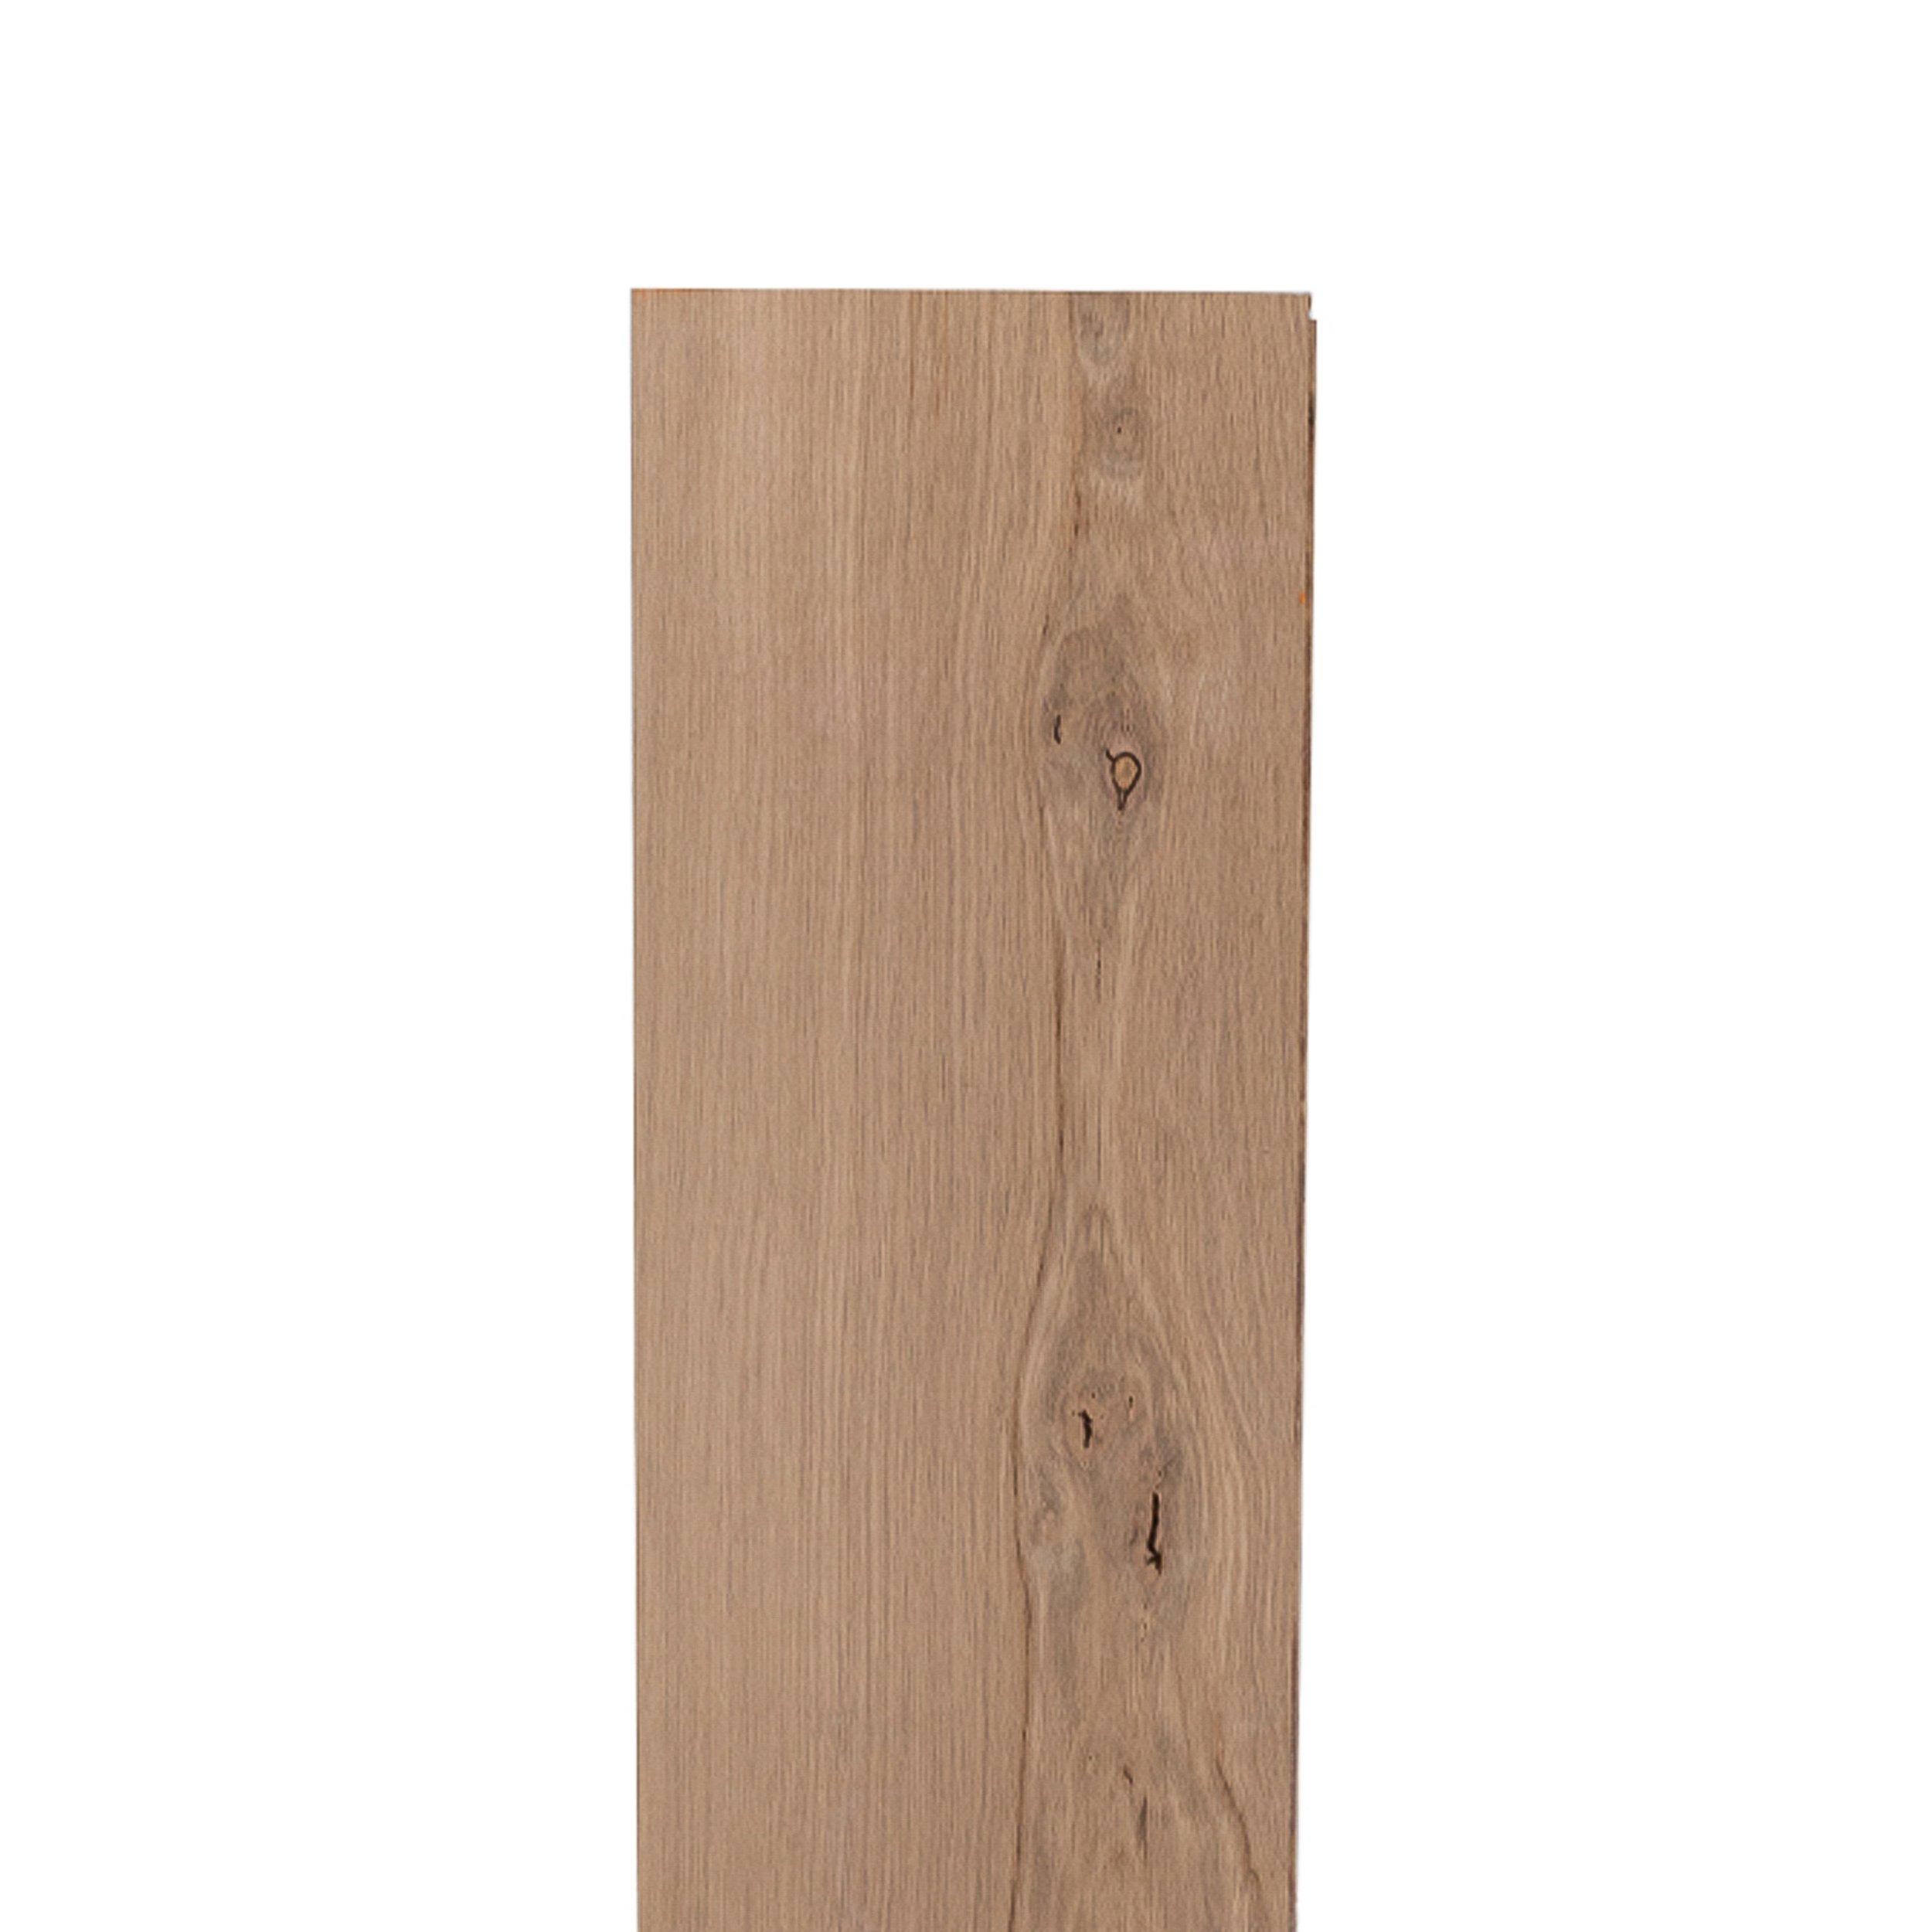 Unfinished White Oak Engineered Hardwood Character Grade